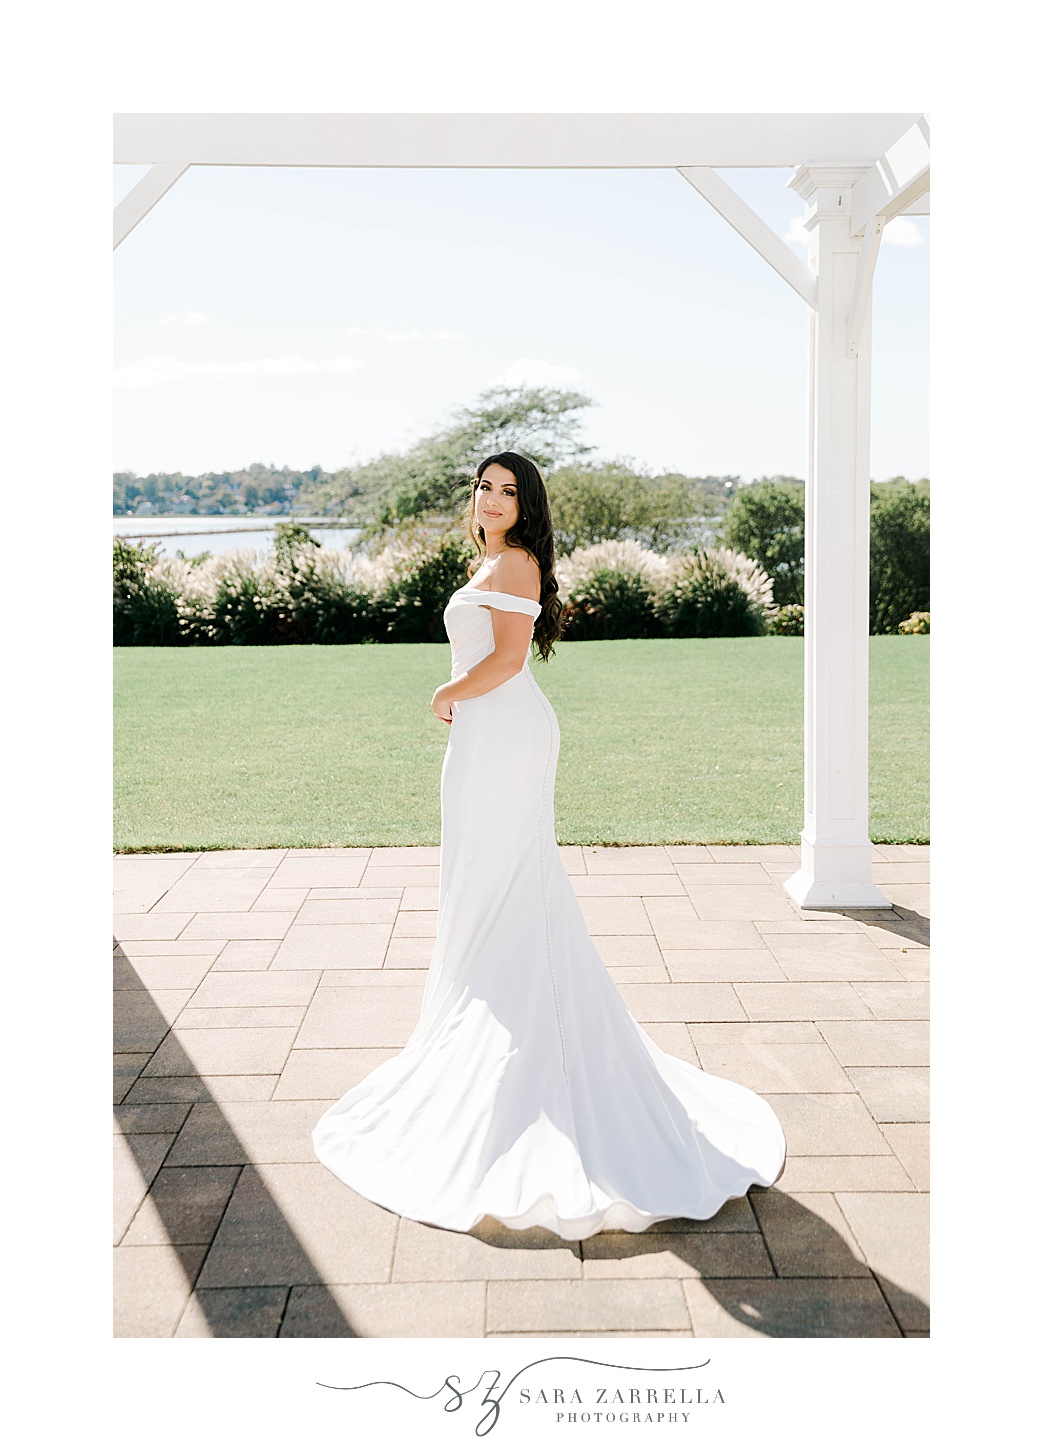 bride stands in off-the- shoulder sleek wedding gown